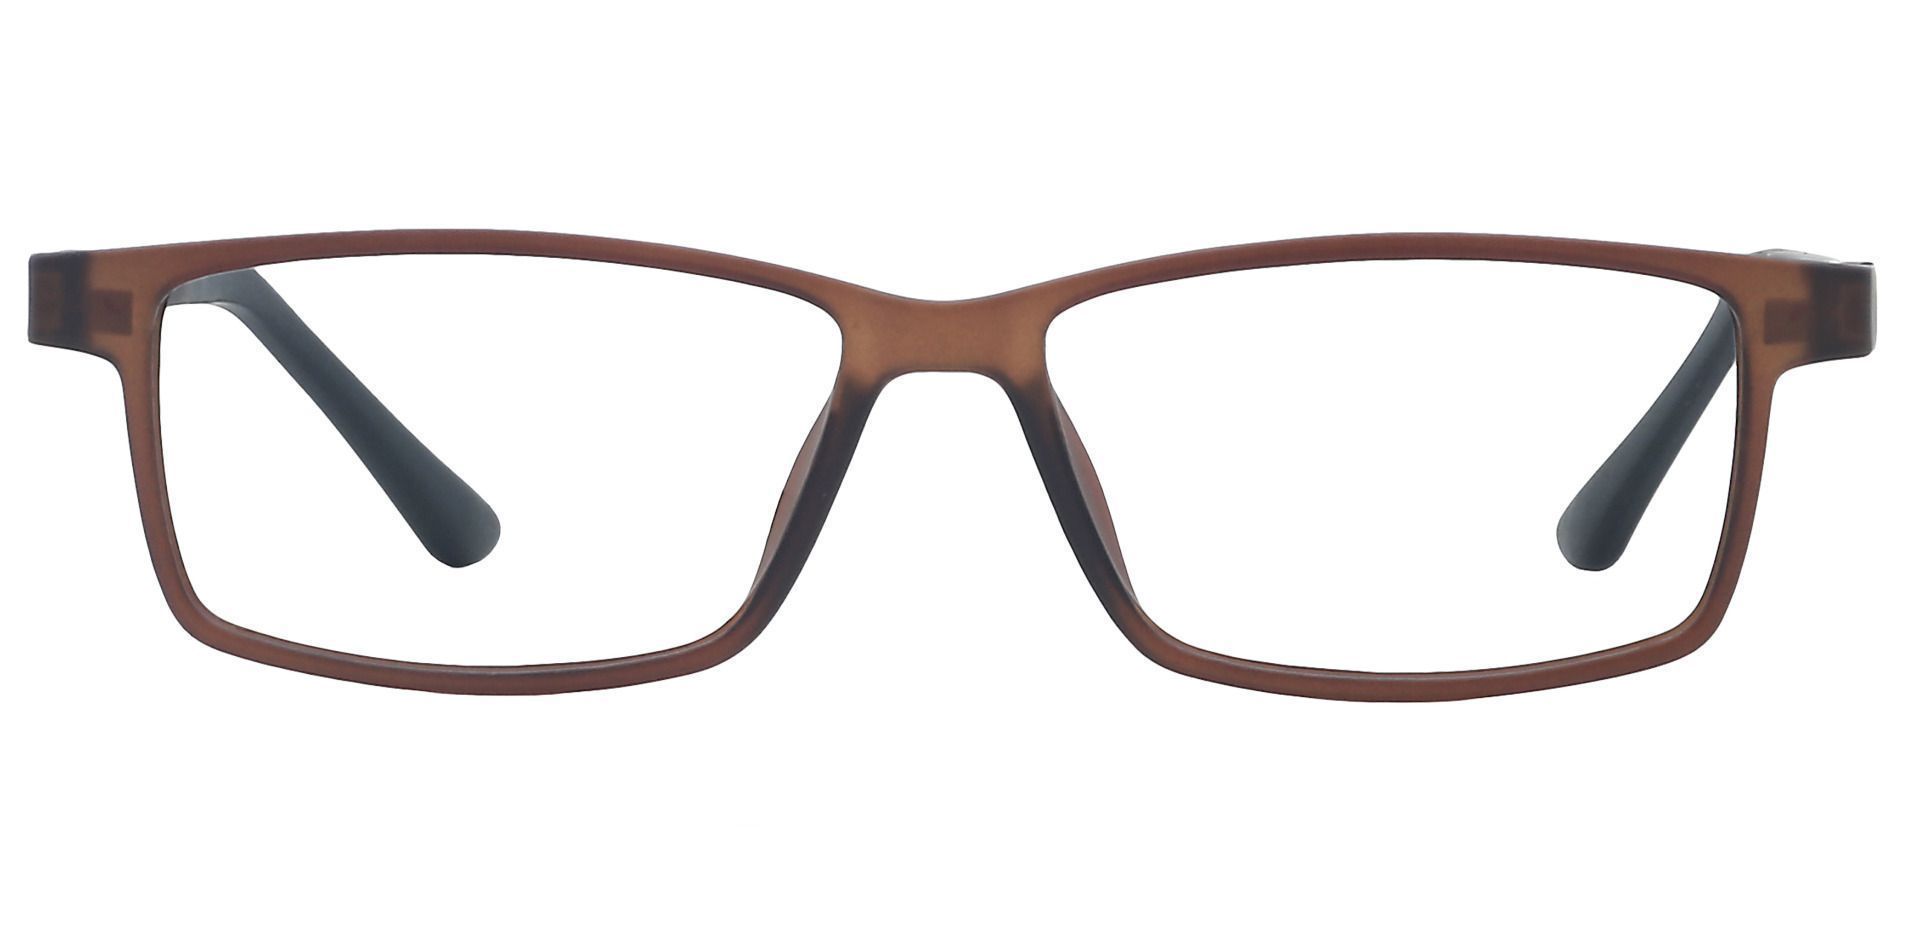 Hanson Rectangle Eyeglasses Frame - Brown